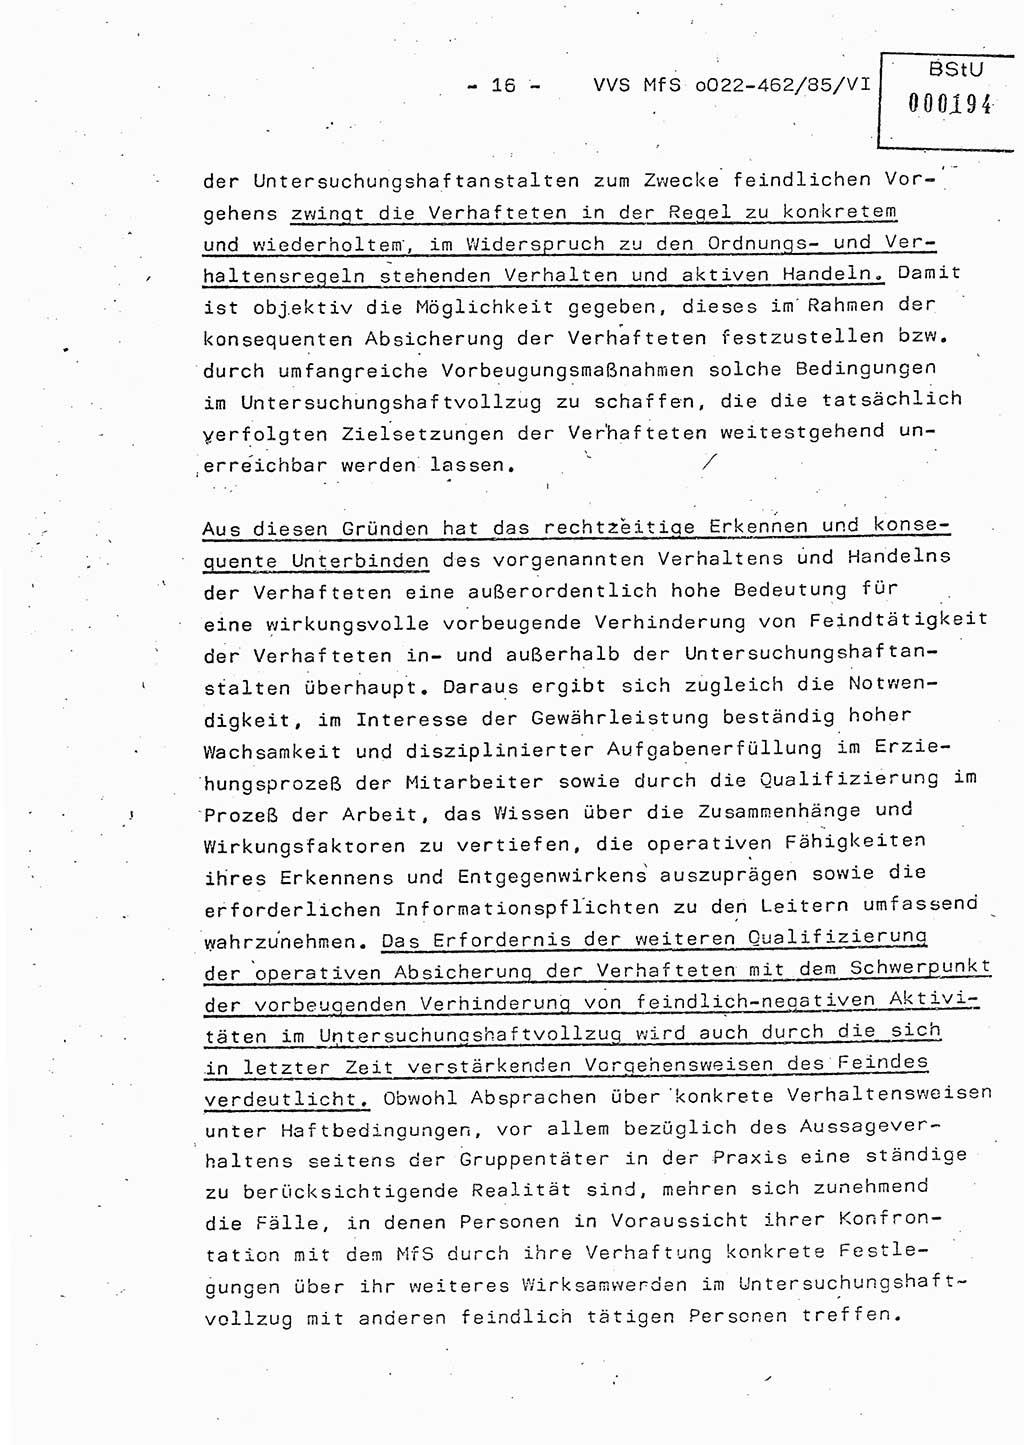 Der Untersuchungshaftvollzug im MfS, Schulungsmaterial Teil Ⅵ, Ministerium für Staatssicherheit [Deutsche Demokratische Republik (DDR)], Abteilung (Abt.) ⅩⅣ, Vertrauliche Verschlußsache (VVS) o022-462/85/Ⅵ, Berlin 1985, Seite 16 (Sch.-Mat. Ⅵ MfS DDR Abt. ⅩⅣ VVS o022-462/85/Ⅵ 1985, S. 16)